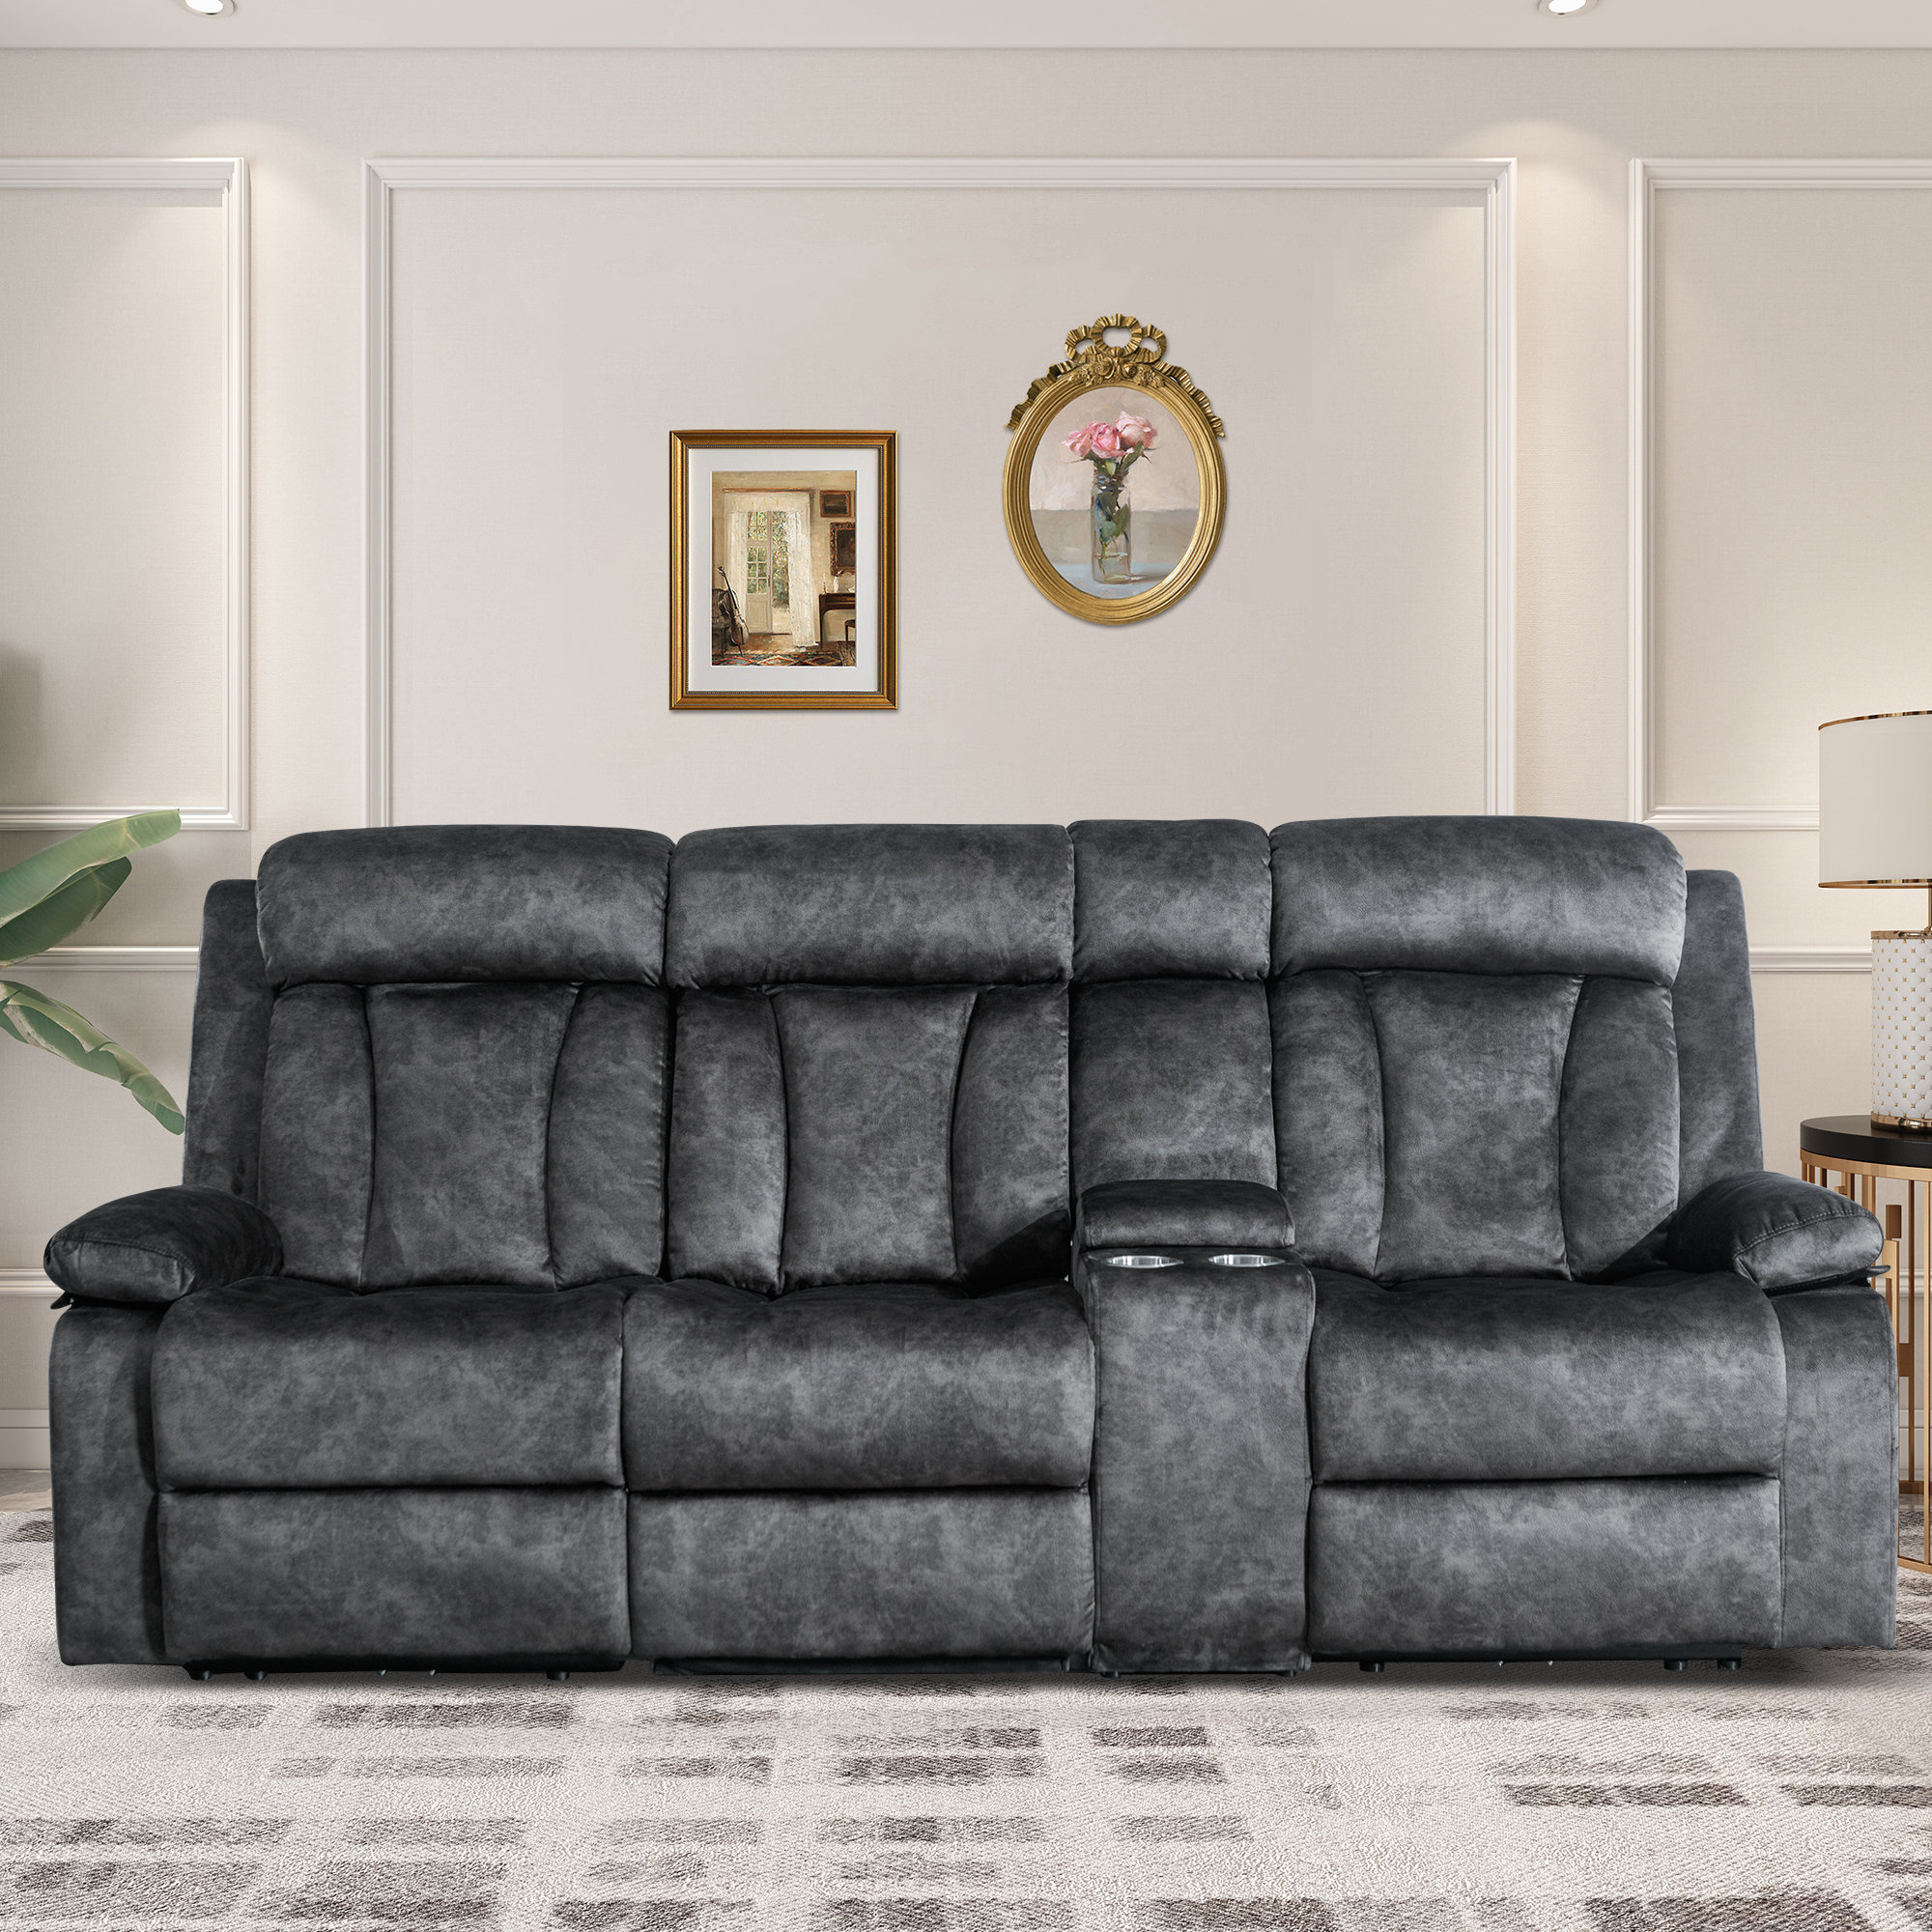 https://assets.wfcdn.com/im/61159409/compr-r85/2642/264248665/prarthana-929-upholstered-power-reclining-sofa.jpg